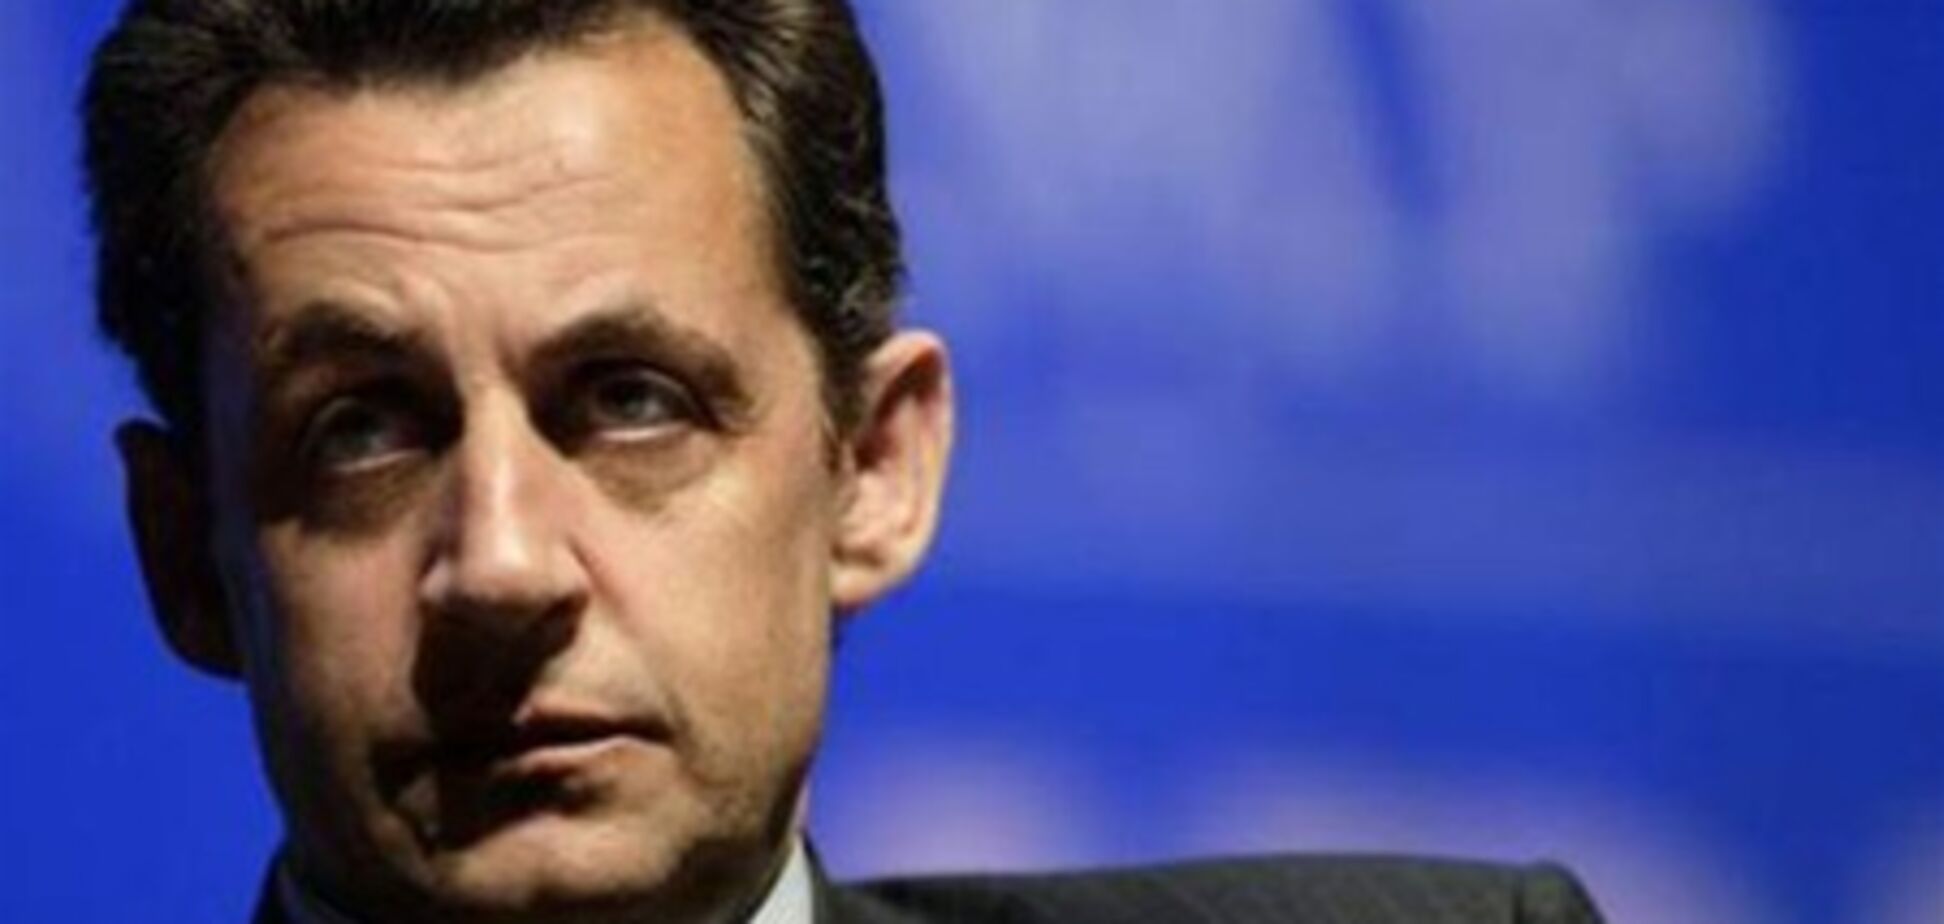 ЗМІ: пишні святкування на честь Жанни Д'Арк - передвиборної трюк Саркозі